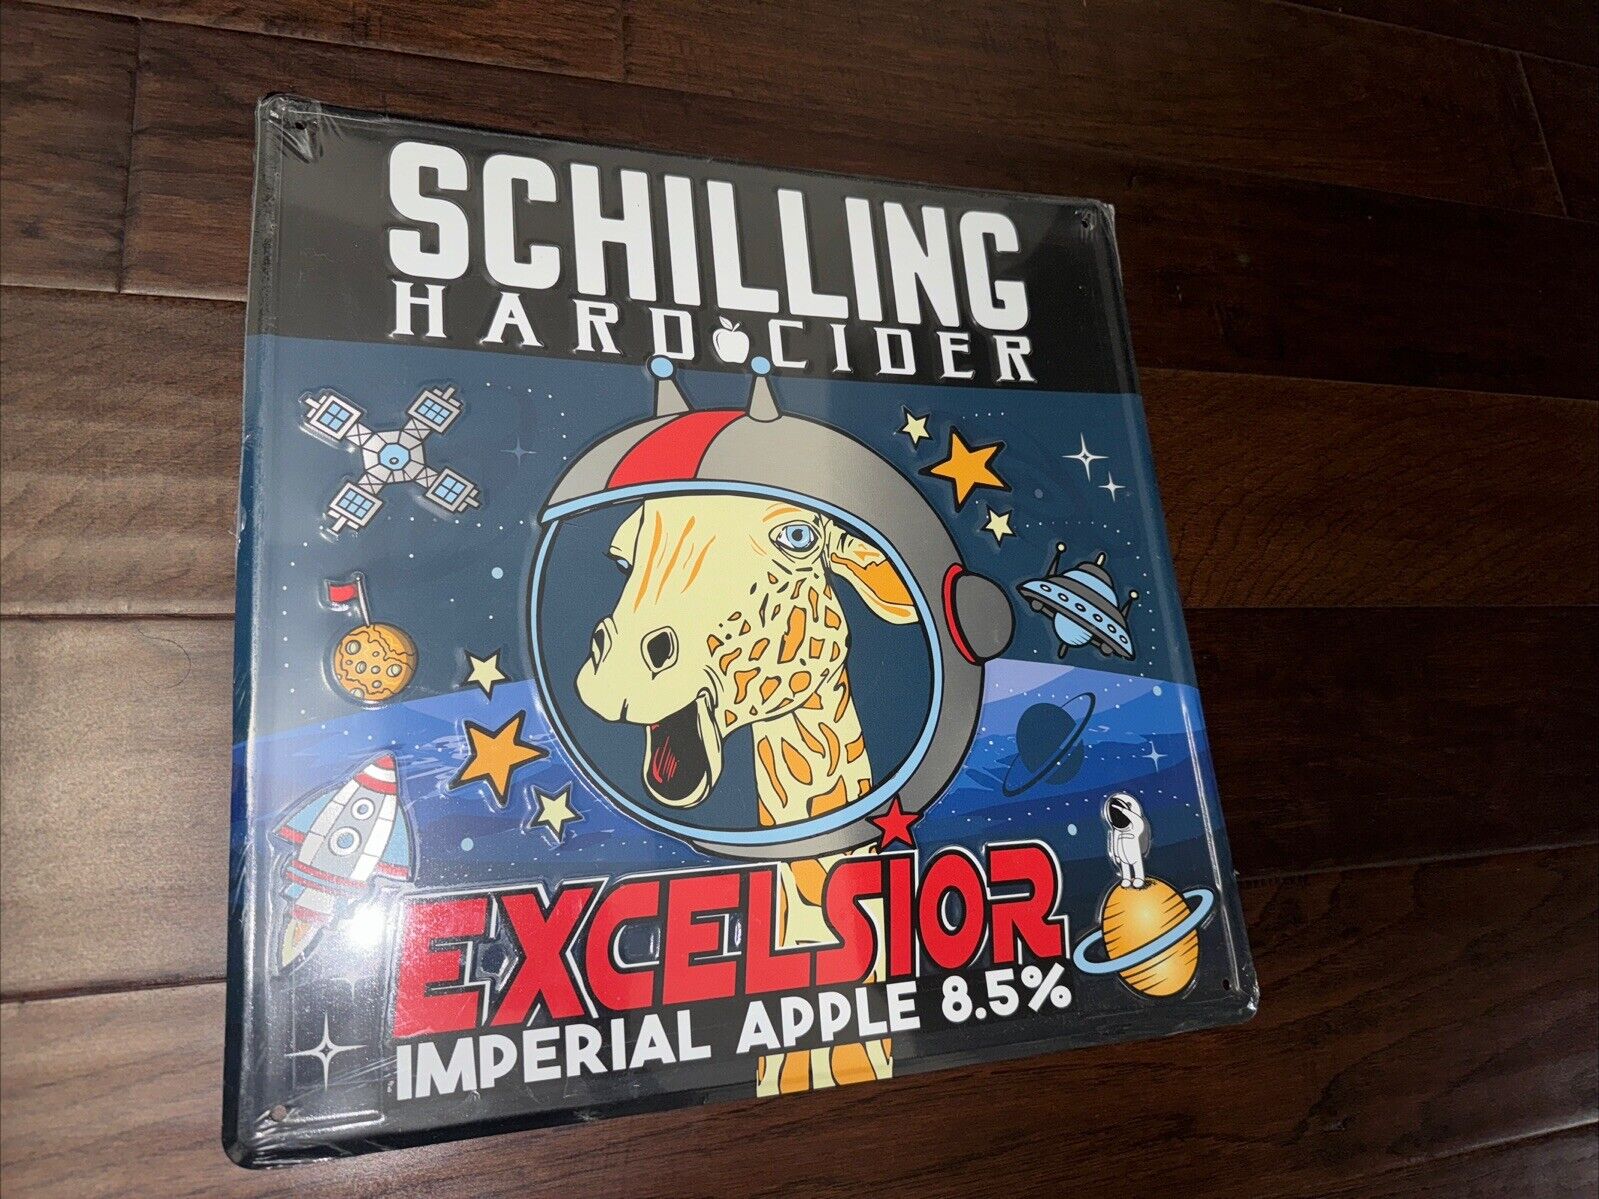 Schilling Hard Cider Metal Sign Excelsior Imperial Apple 8.5% Brand New.